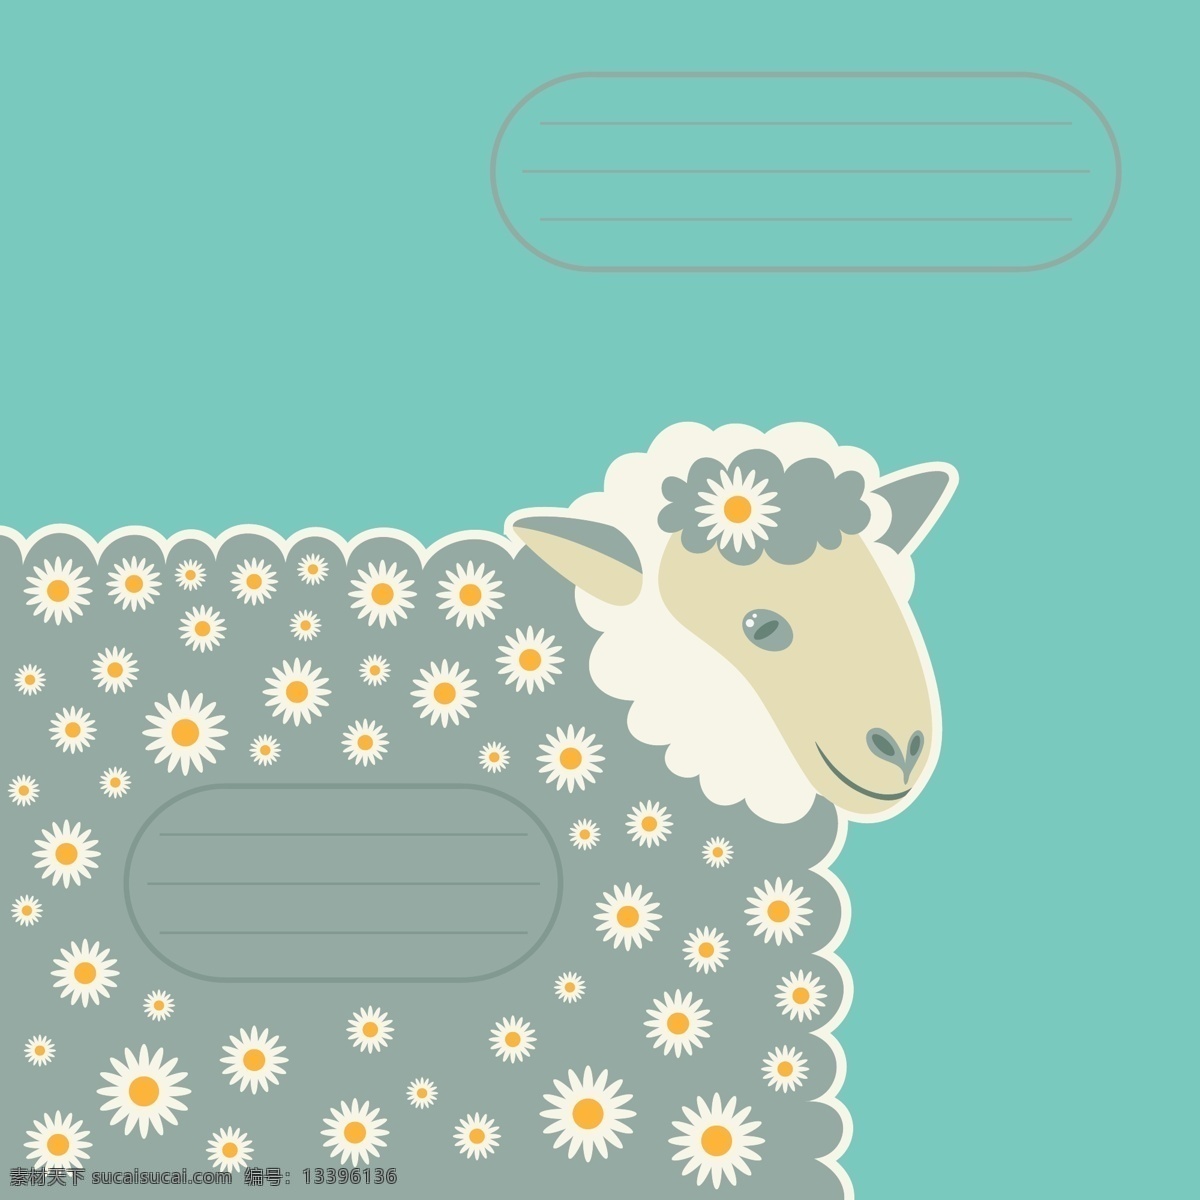 2015 动物 动物世界 家禽家畜 节日庆祝 卡通动物 卡通设计 卡通羊 羊年素材 矢量羊 矢量动物 绵羊 手绘 羊年设计元素 生物世界 文化艺术 节日素材 其他节日